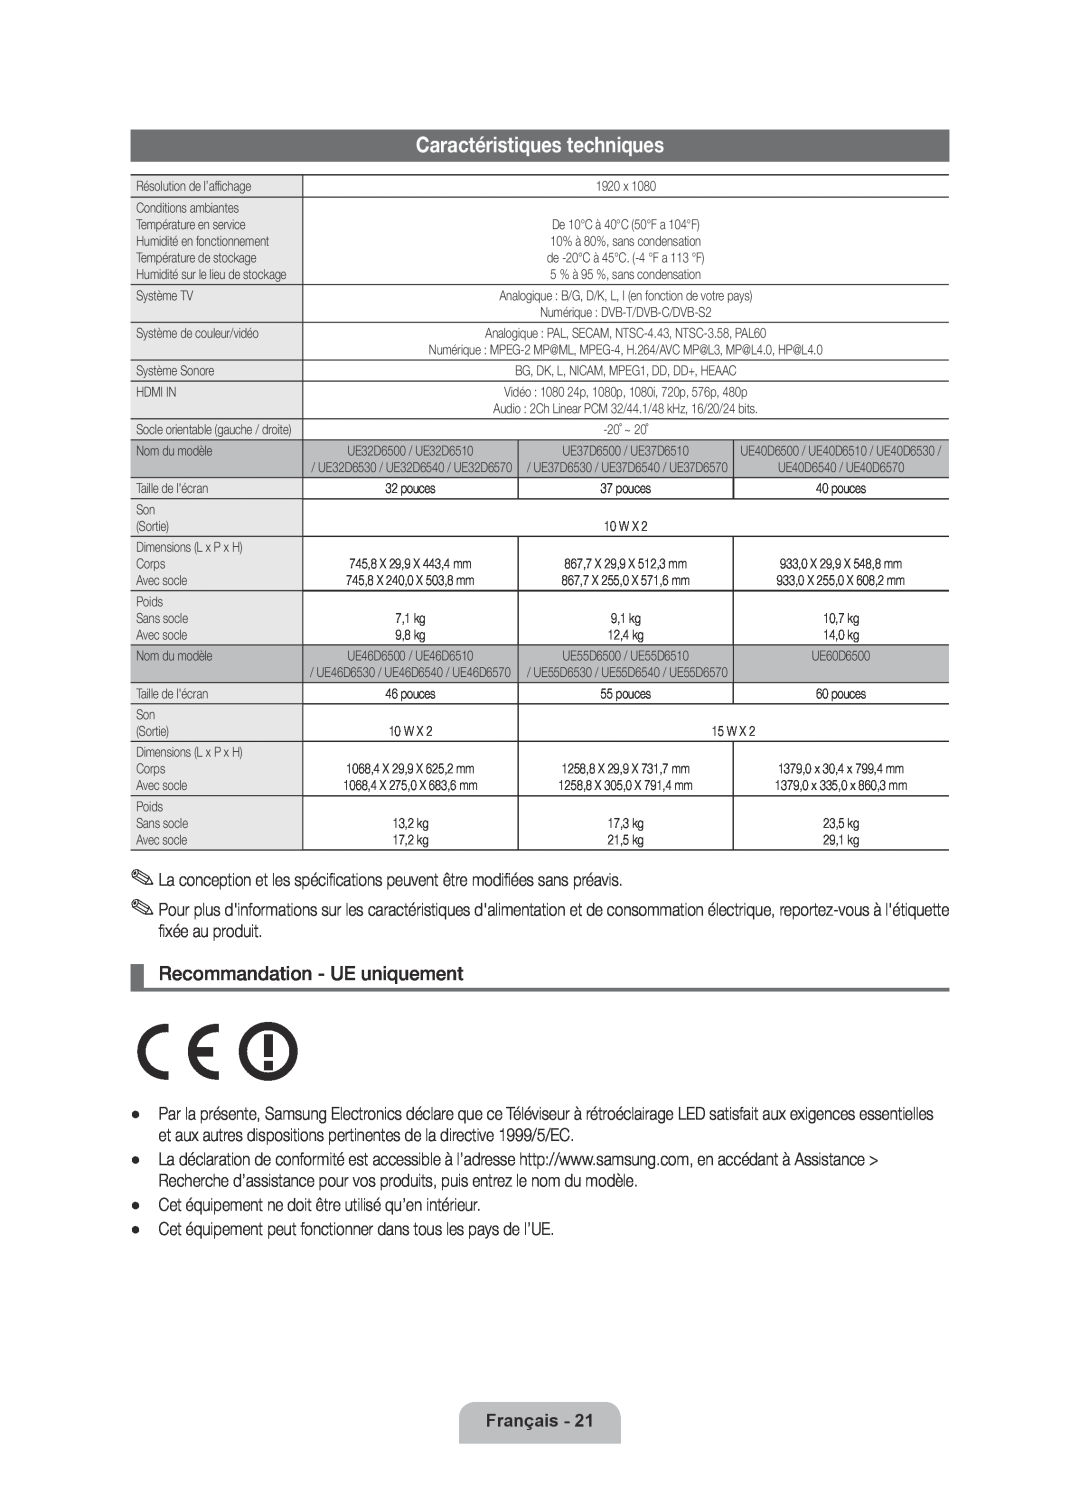 Samsung UE37D6500VSXXN, UE40D6530WSXZG manual Caractéristiques techniques, Recommandation - UE uniquement, Français 